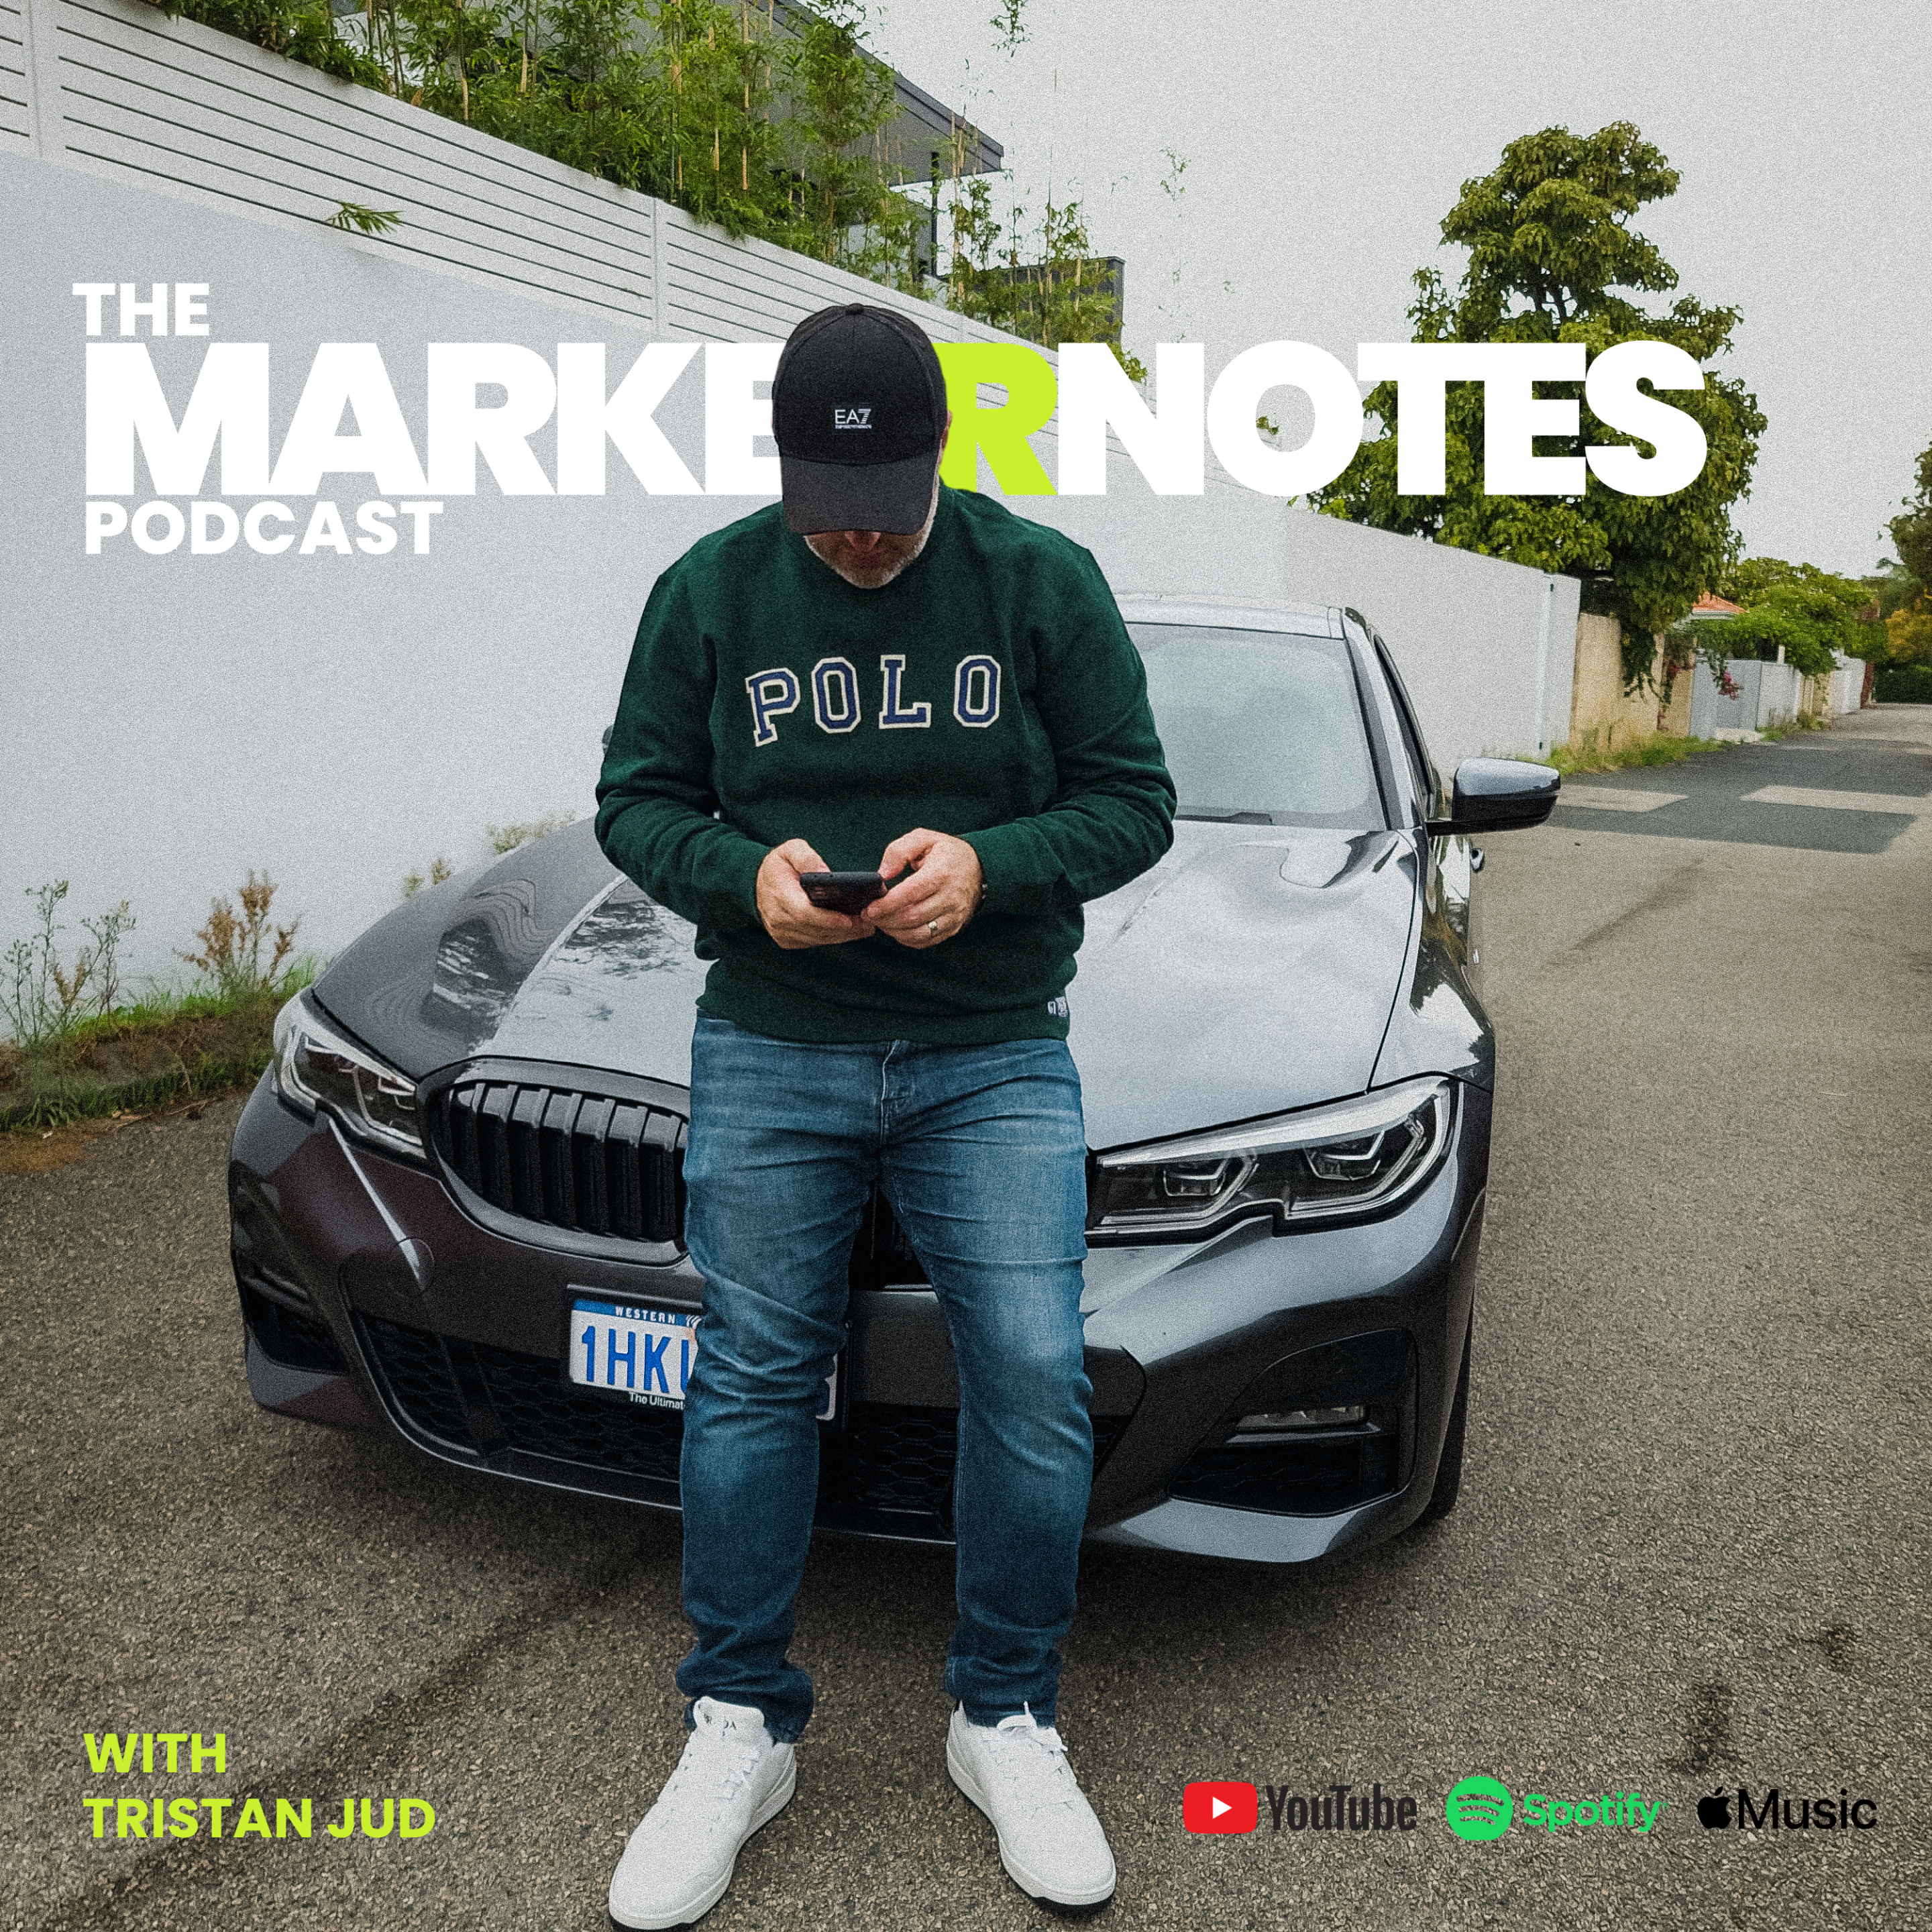 The marketrnotes Podcast